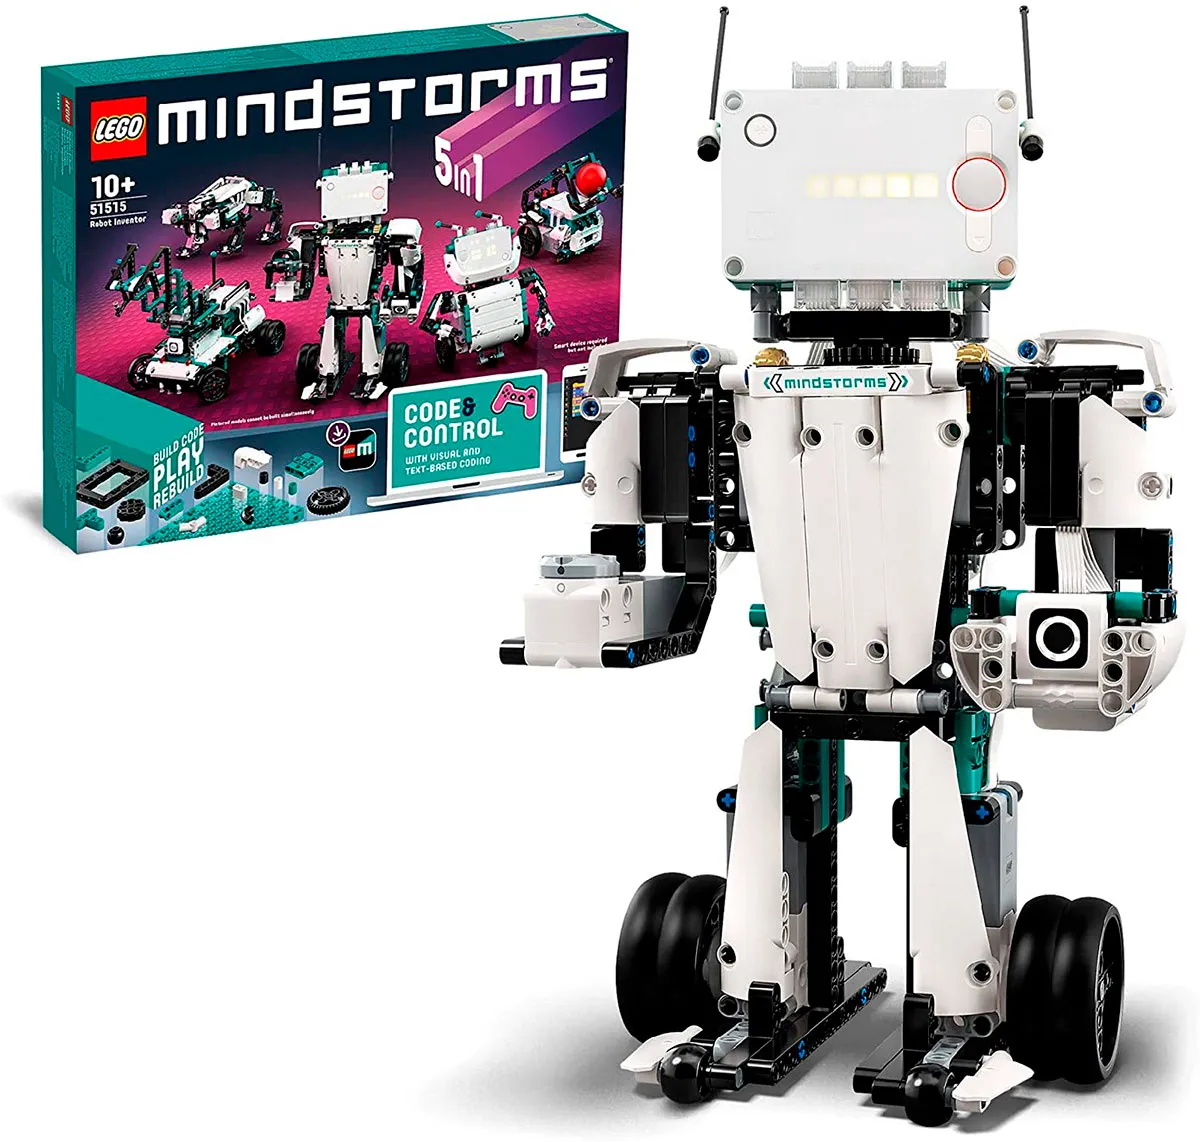 https://c02.purpledshub.com/uploads/sites/41/2021/11/Lego-Mindstorms-Robot-Inventor-coding-toys-for-kids-6211861.jpg?webp=1&w=1200